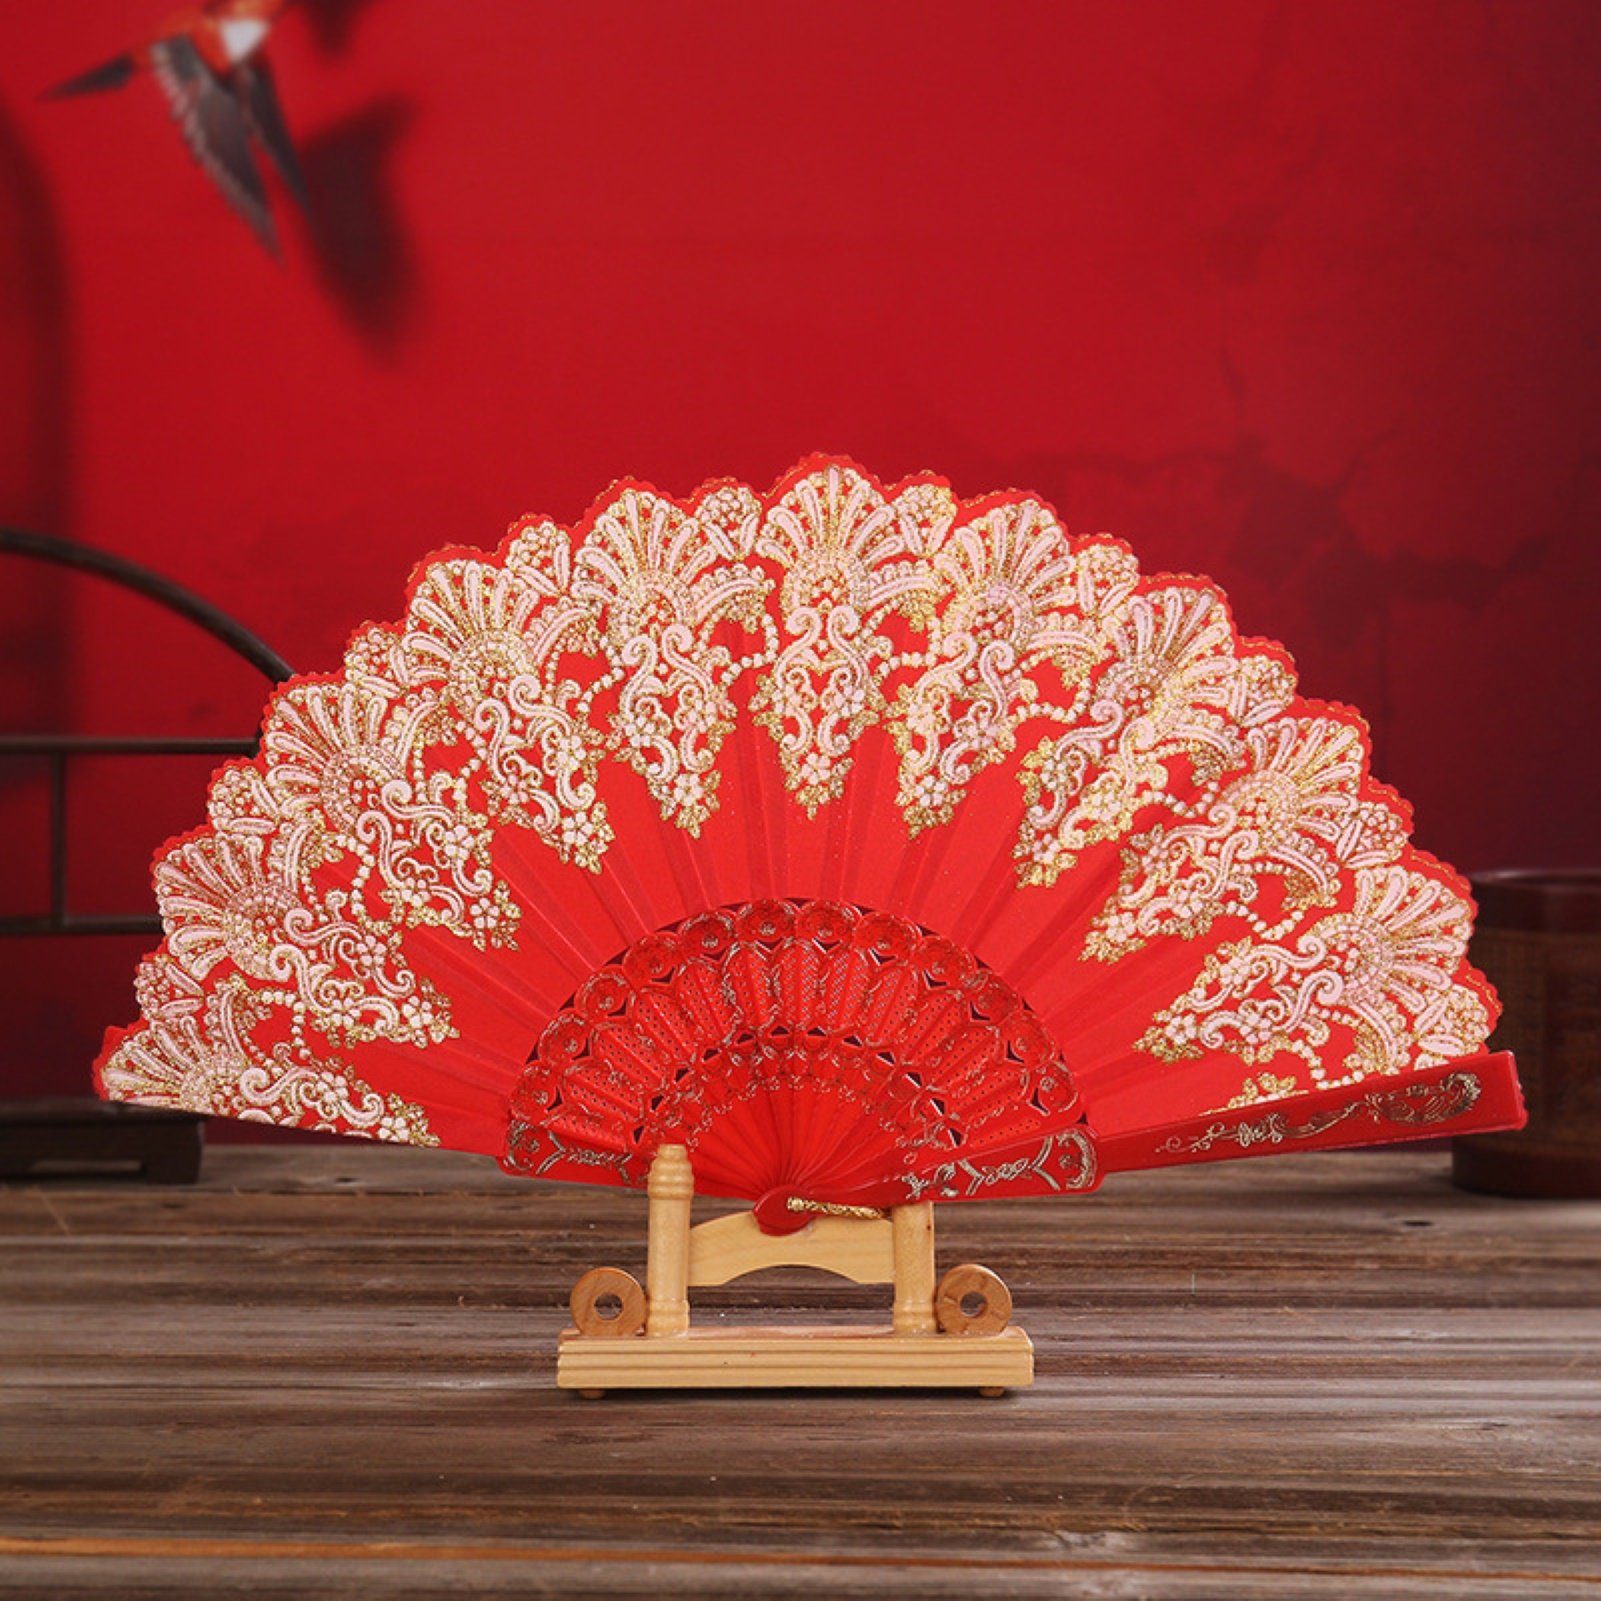 Rutaqian Handventilator Faltbarer Handfächer , Tanzparty Pink Vintage Für Handfächer Hochzeit